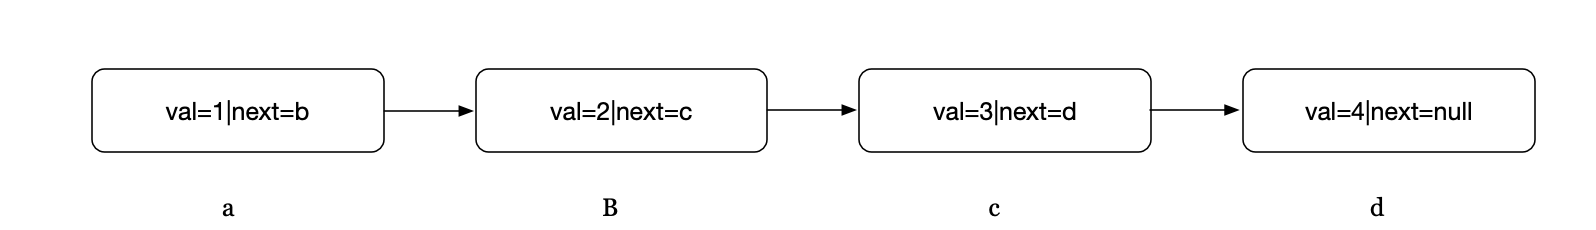 初始化链表结构